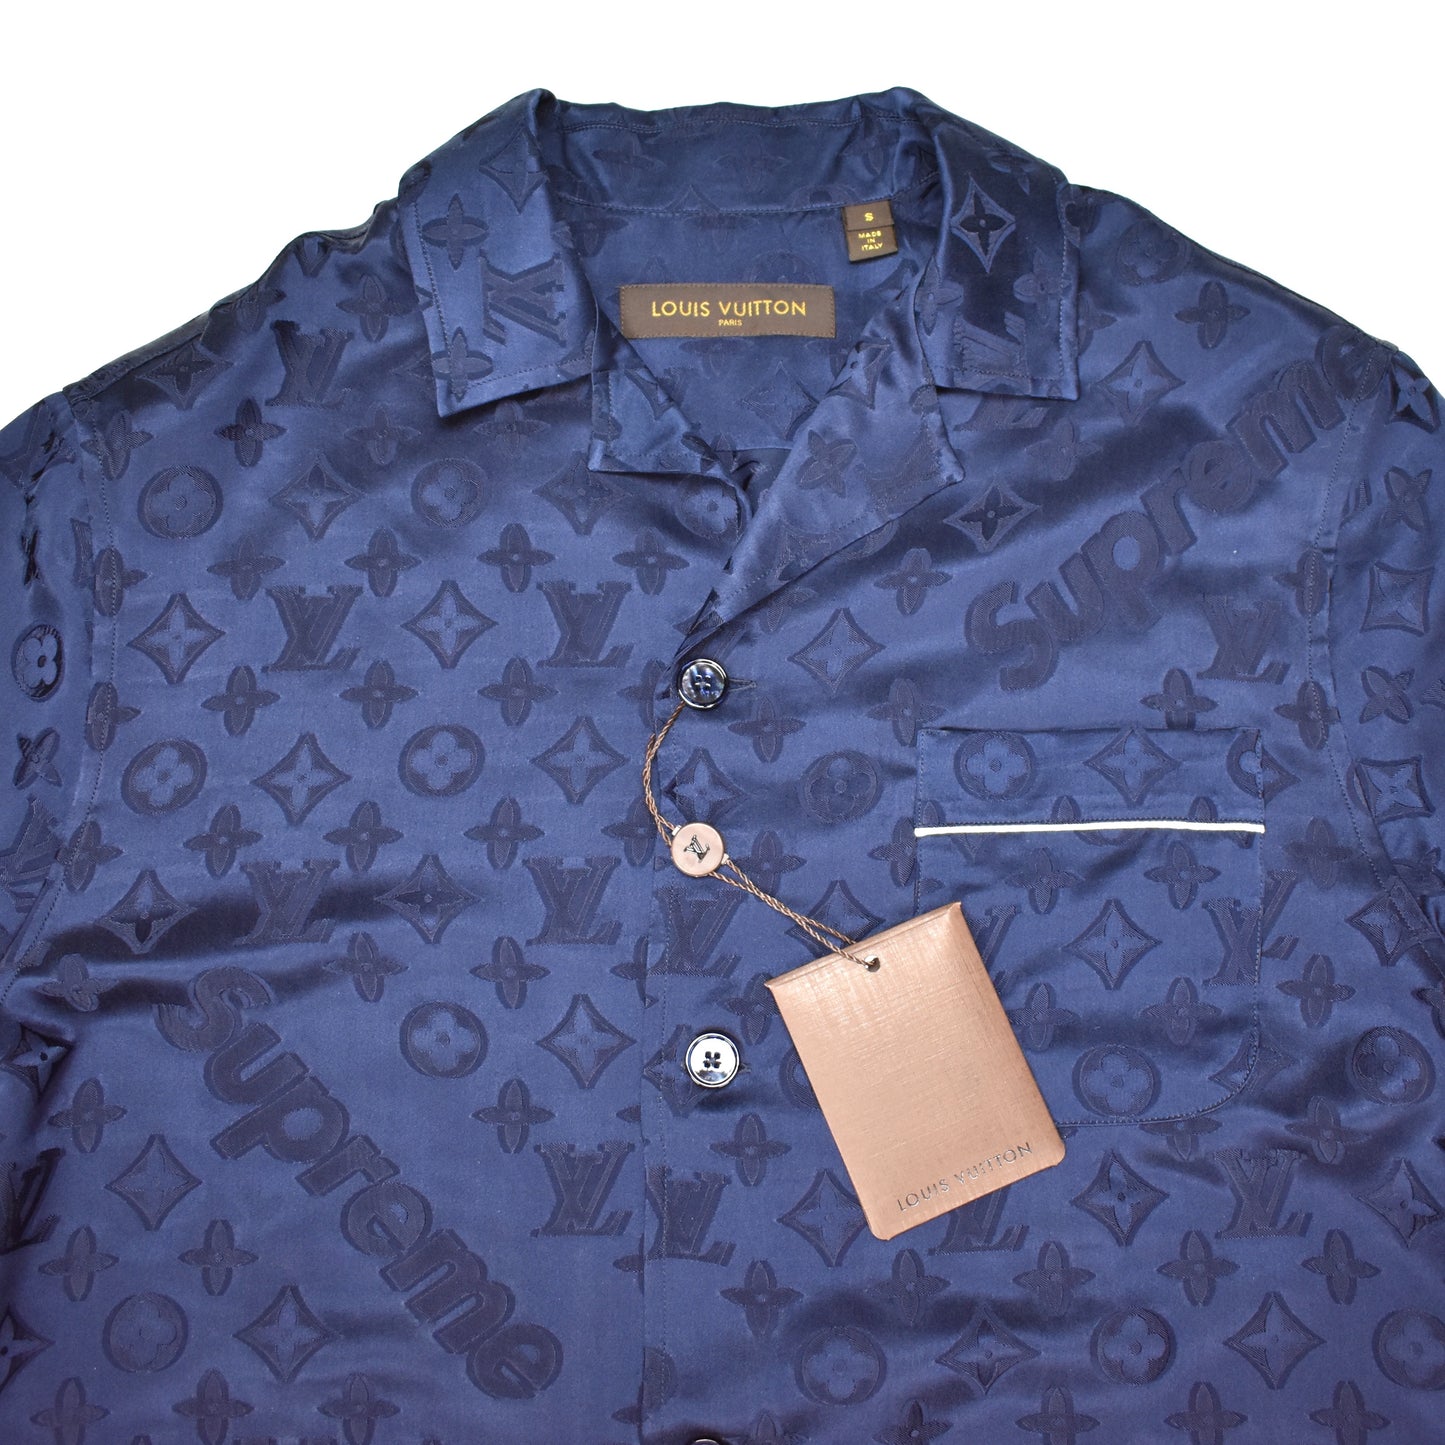 Louis Vuitton x Supreme 2017 Jacquard Pajama Set Pajama Set - Blue